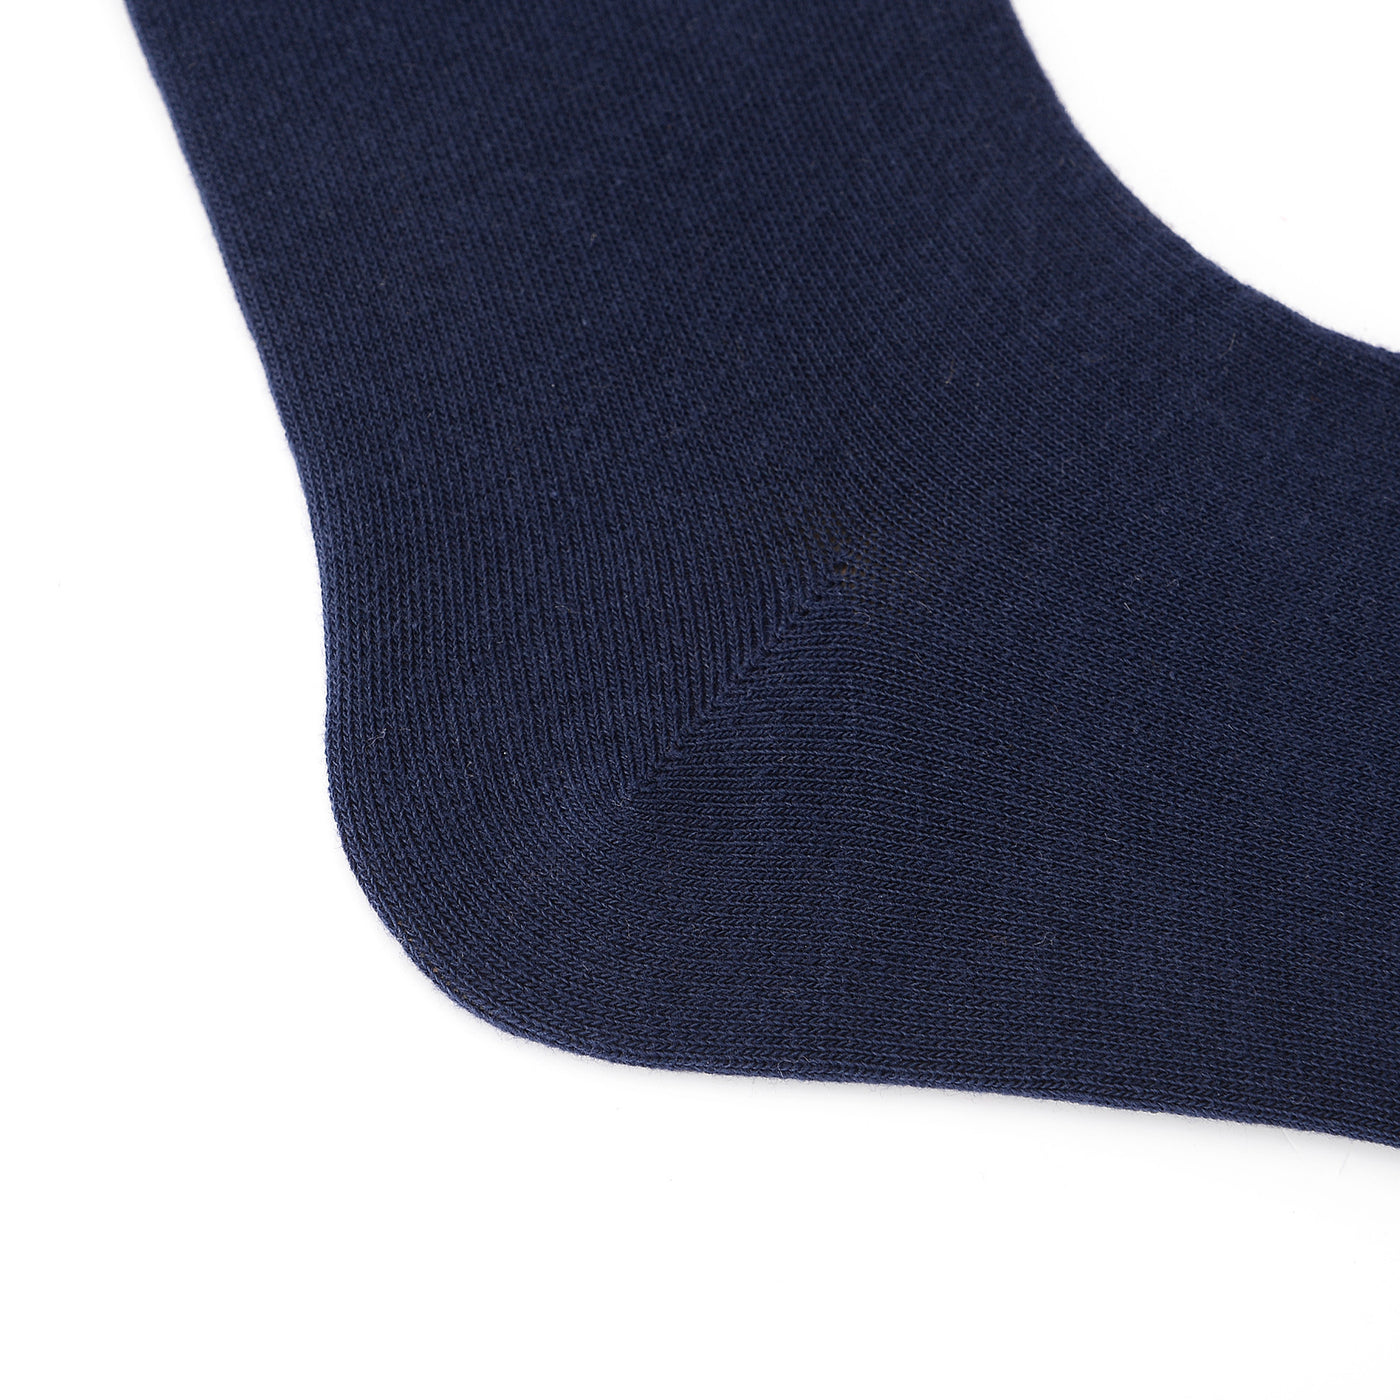 Calcetines formales de algodón peinado de alta calidad en azul marino